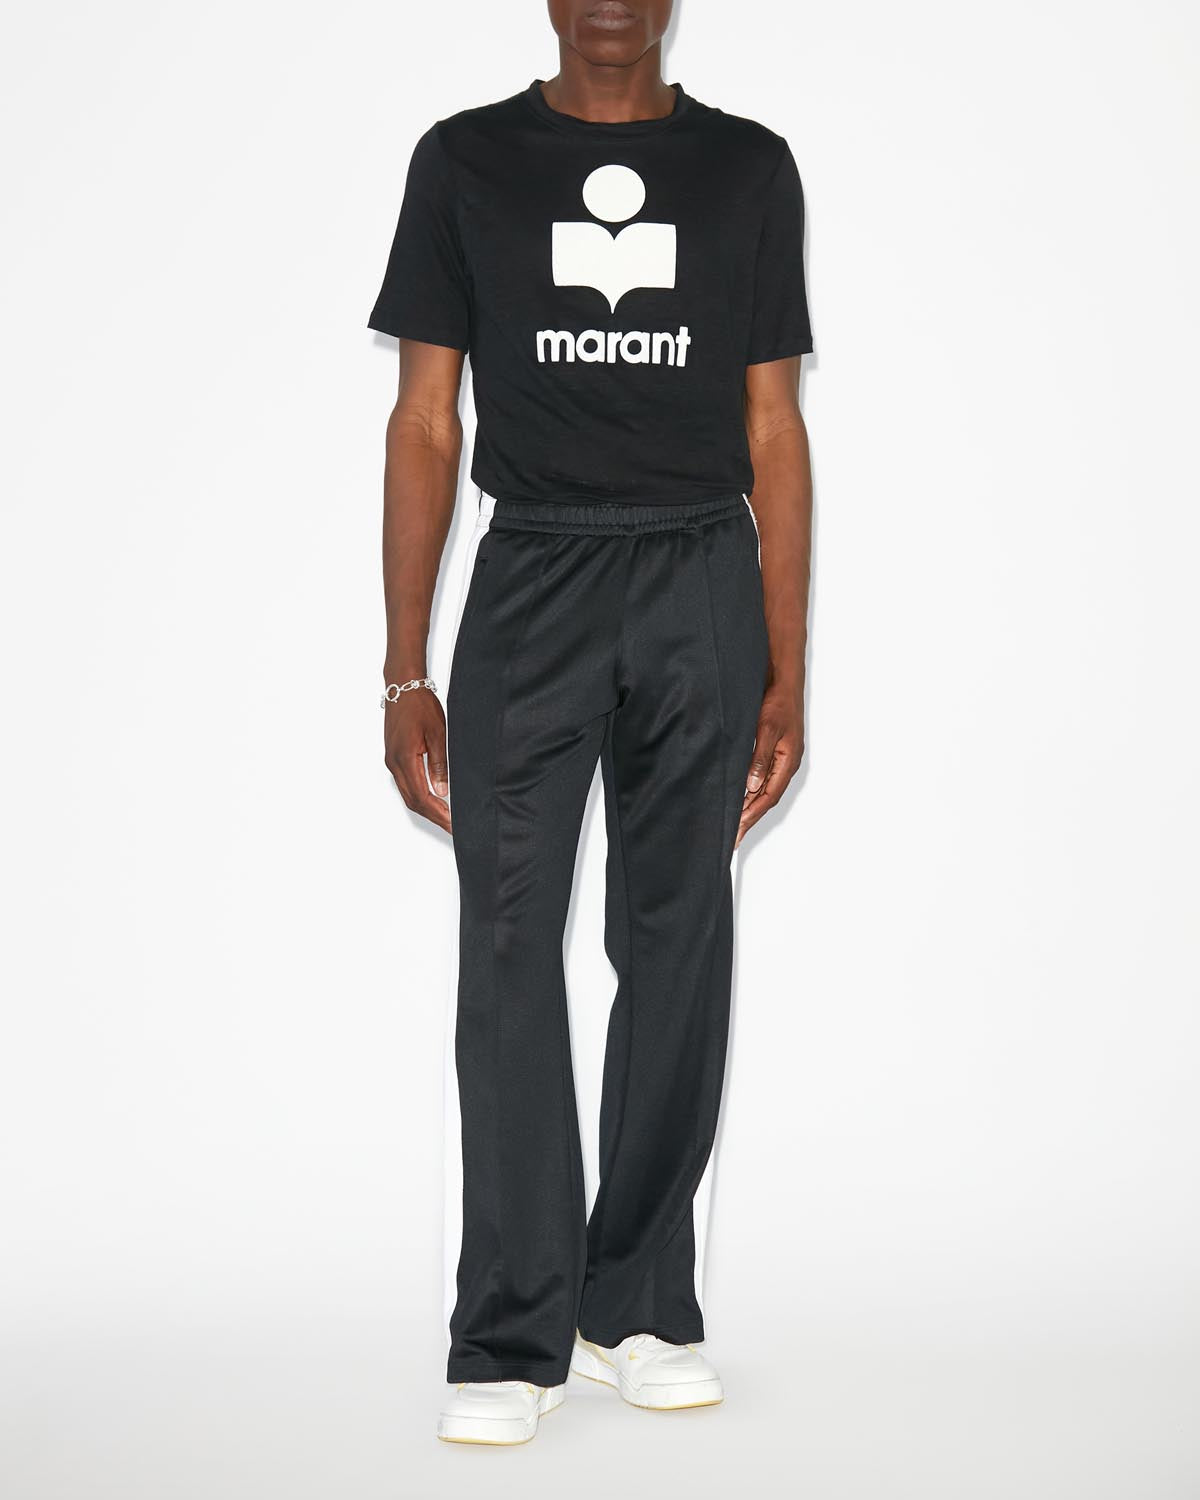 Karman ロゴ tシャツ Man 黒 4